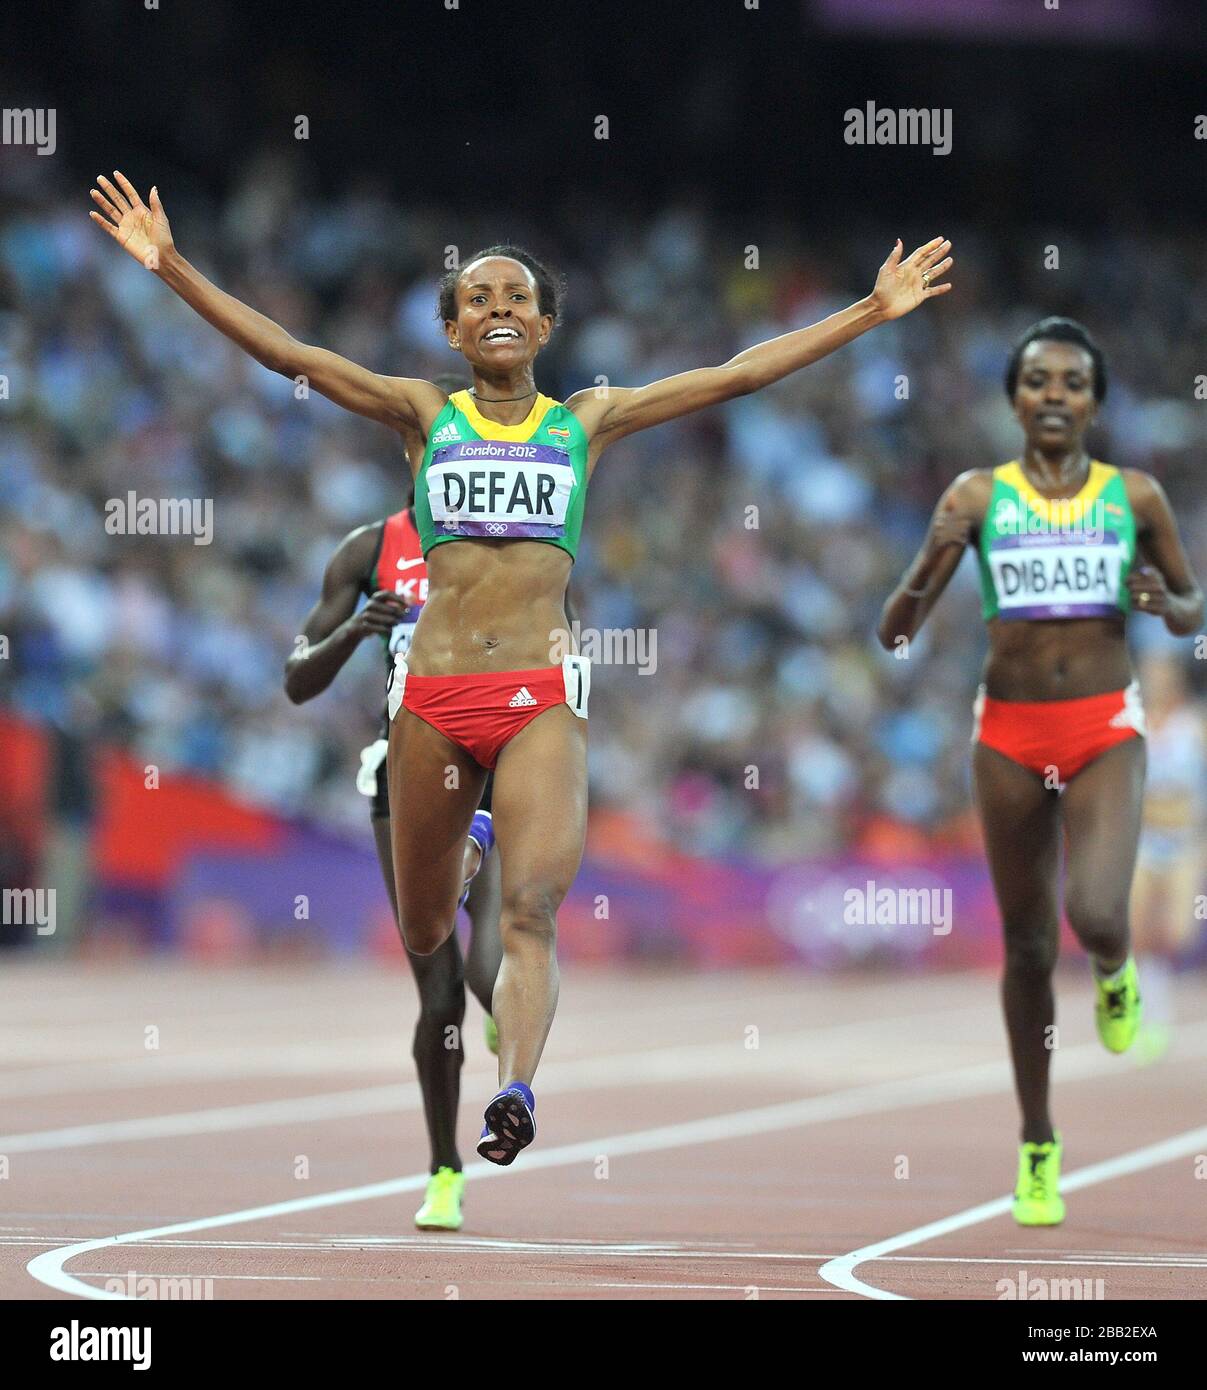 Äthiopiens Meseret Defar feiert am 14. Tag der Olympischen Spiele 2012 in London den Gewinn der Goldmedaille im 5000-m-Finale der Frauen Stockfoto